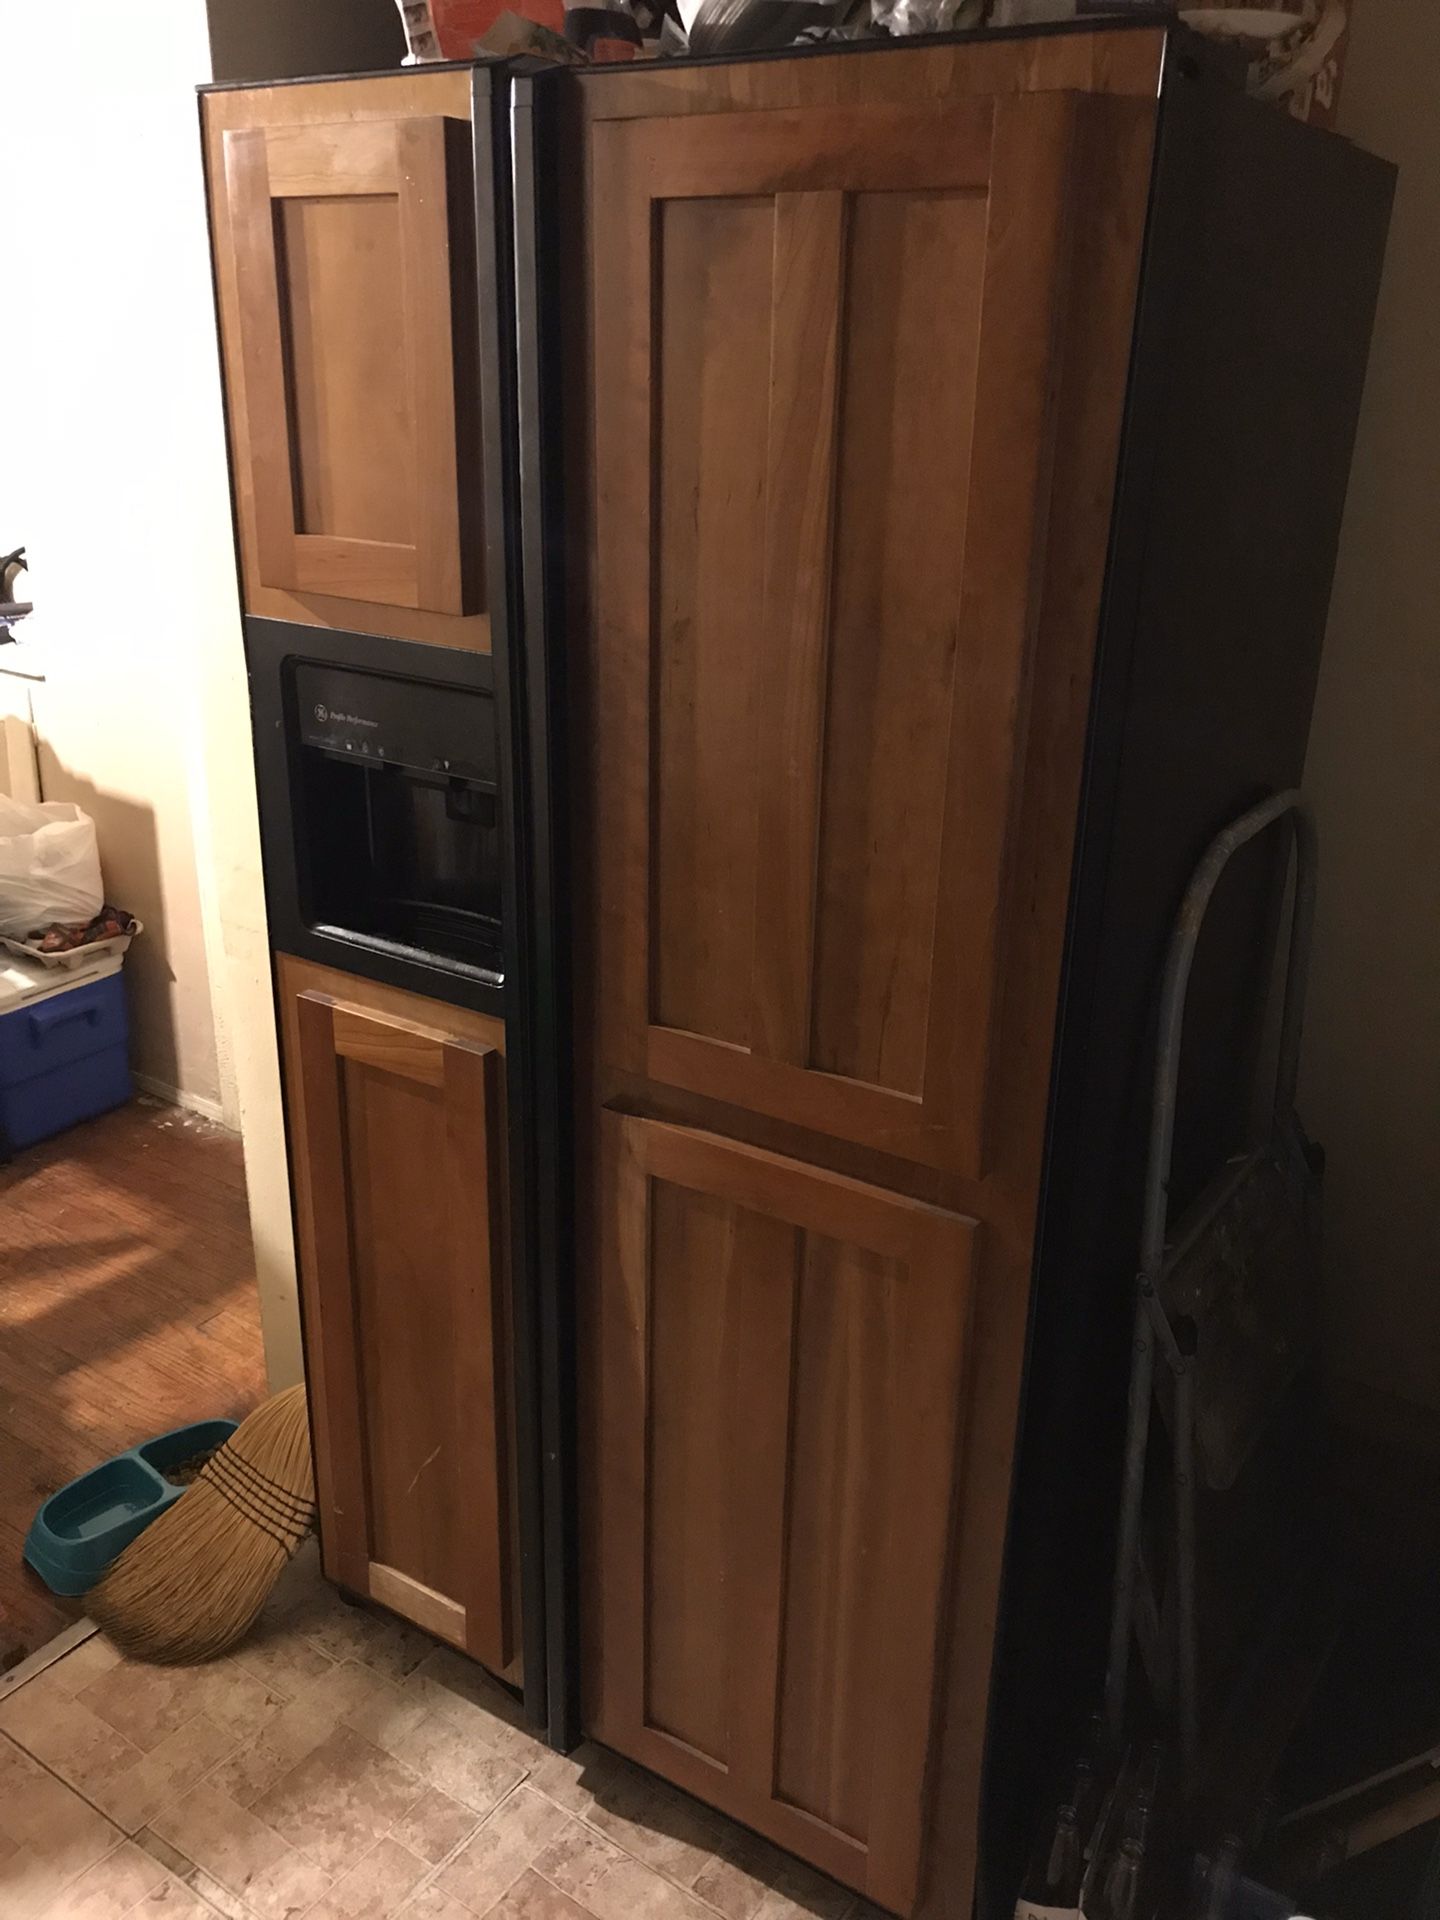 Wood panel Refrigerator